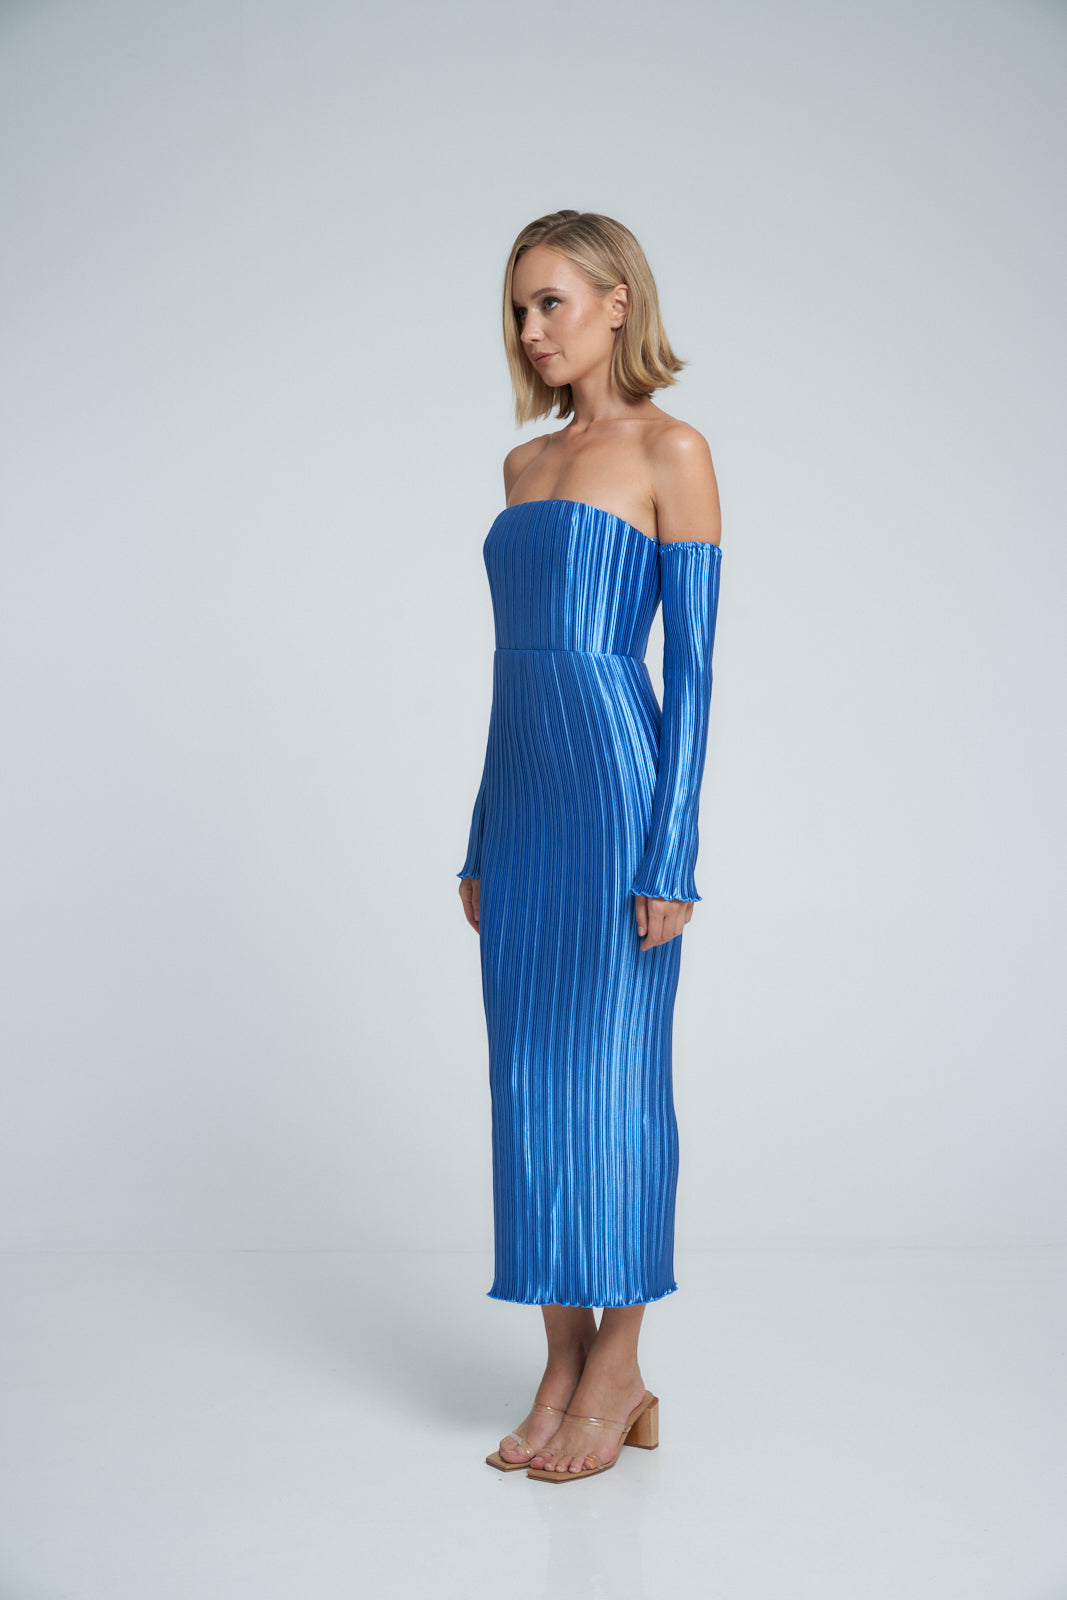 Gatsby Gown - Mediterranean Blue